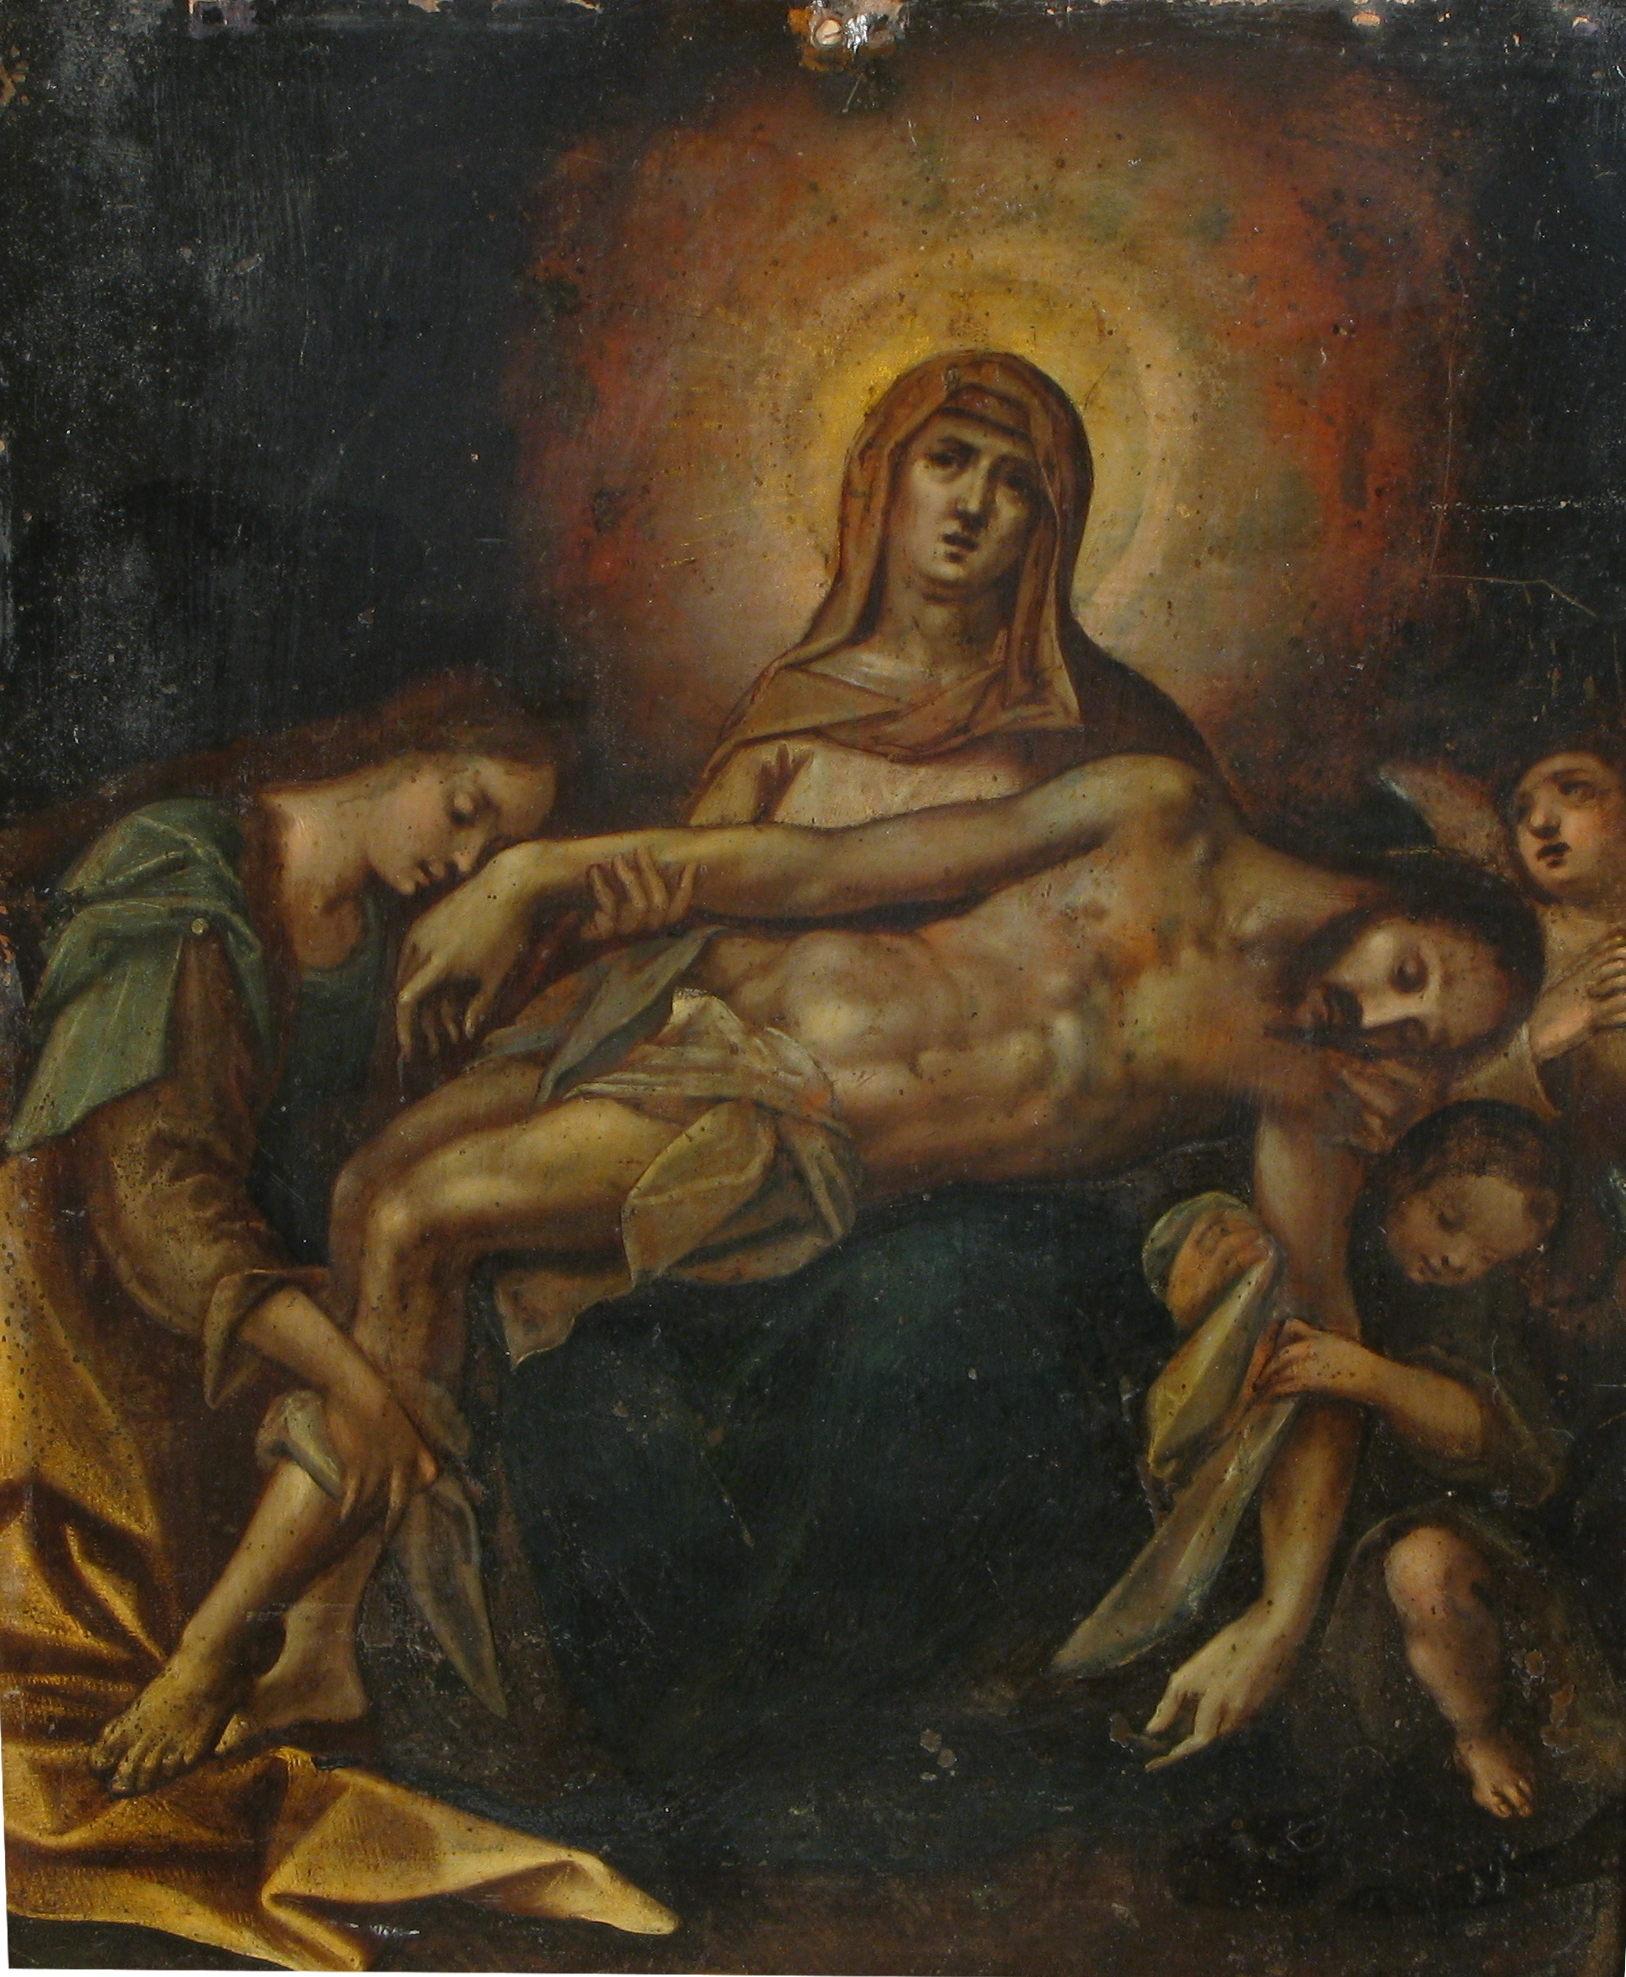 Pieta, Ölgemälde auf Kupfer,  Norditalien, 17. Jahrhundert

Im Vordergrund ist der tote Christus zu sehen, leblos und schlaff auf Marias Knien liegend, gestützt und angebetet von einer Frau, die auf der linken Seite des Bildes kniet und seine Hand